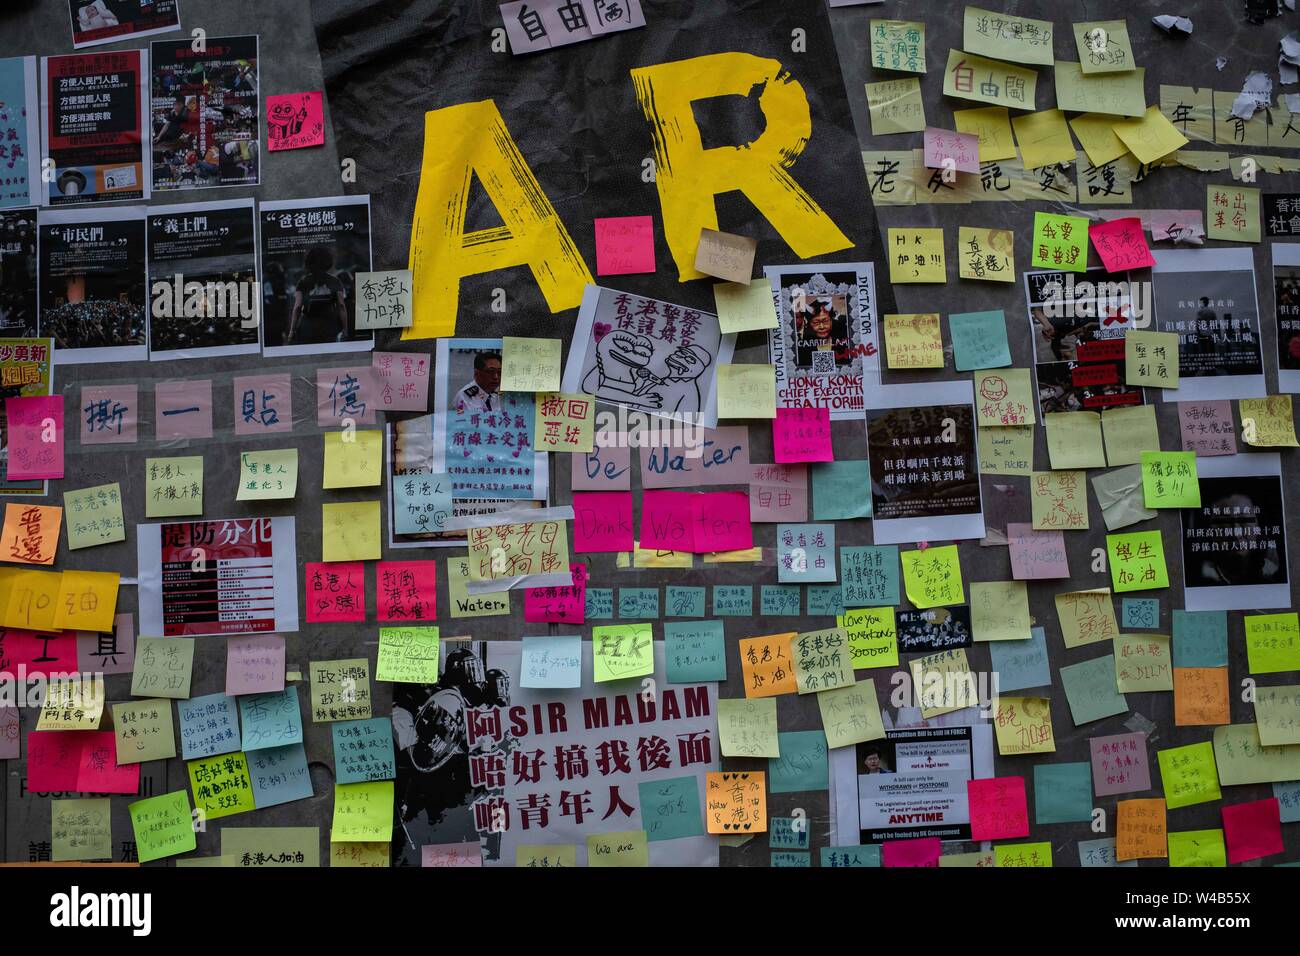 Ein Lennon-mauer mit Nachrichten in Admiralty Legislativrat Gebäude während des Protestes gesehen. Hong Kong Demonstranten für ein weiteres Wochenende der Proteste gegen die umstrittene Auslieferung Bill gesammelt und mit einer wachsenden Liste von Beschwerden, die der Aufrechterhaltung des Drucks auf Chief Executive Carrie Lam. Stockfoto